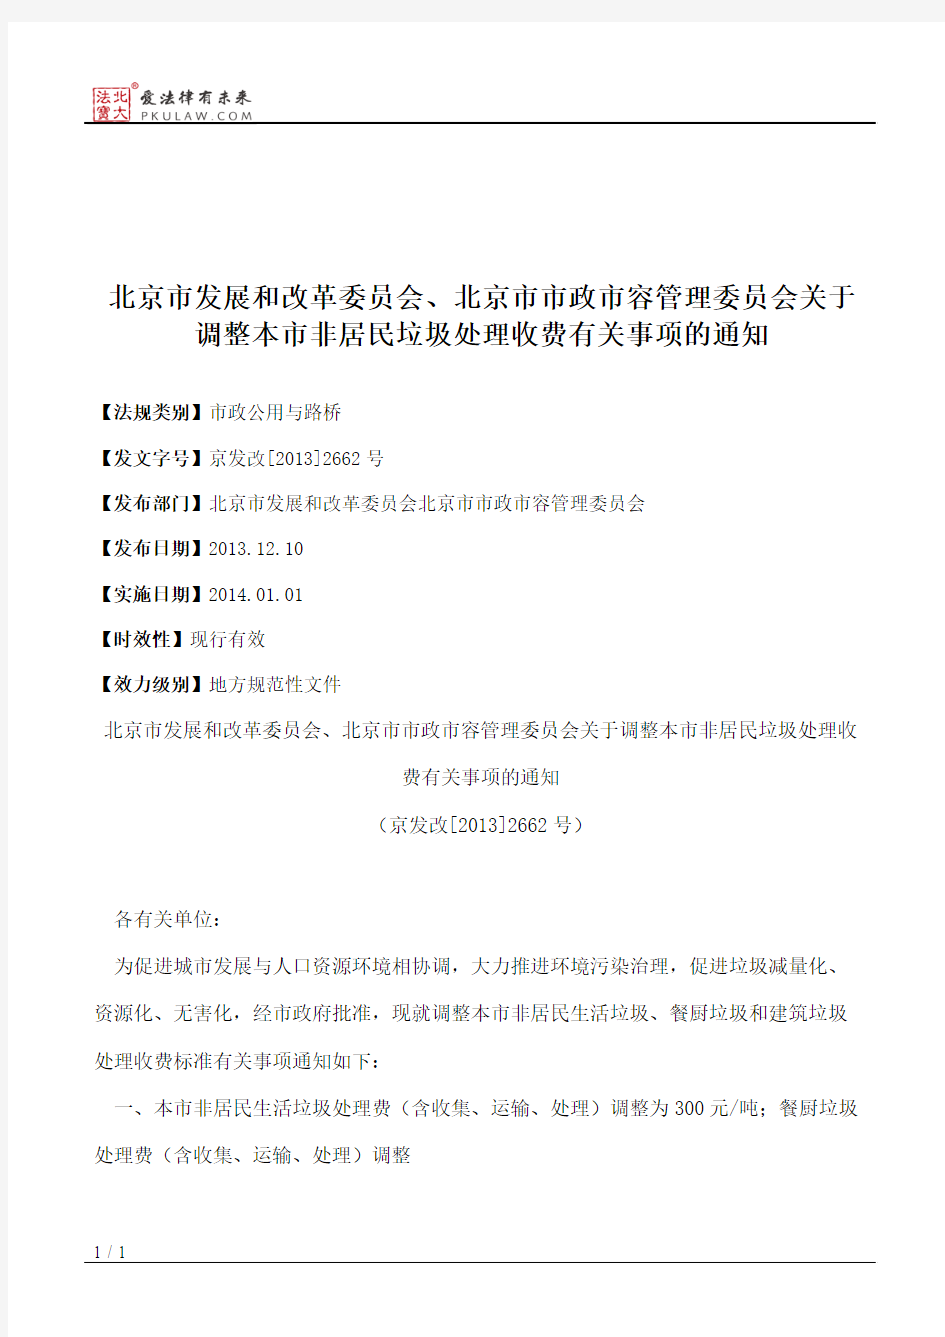 北京市发展和改革委员会、北京市市政市容管理委员会关于调整本市